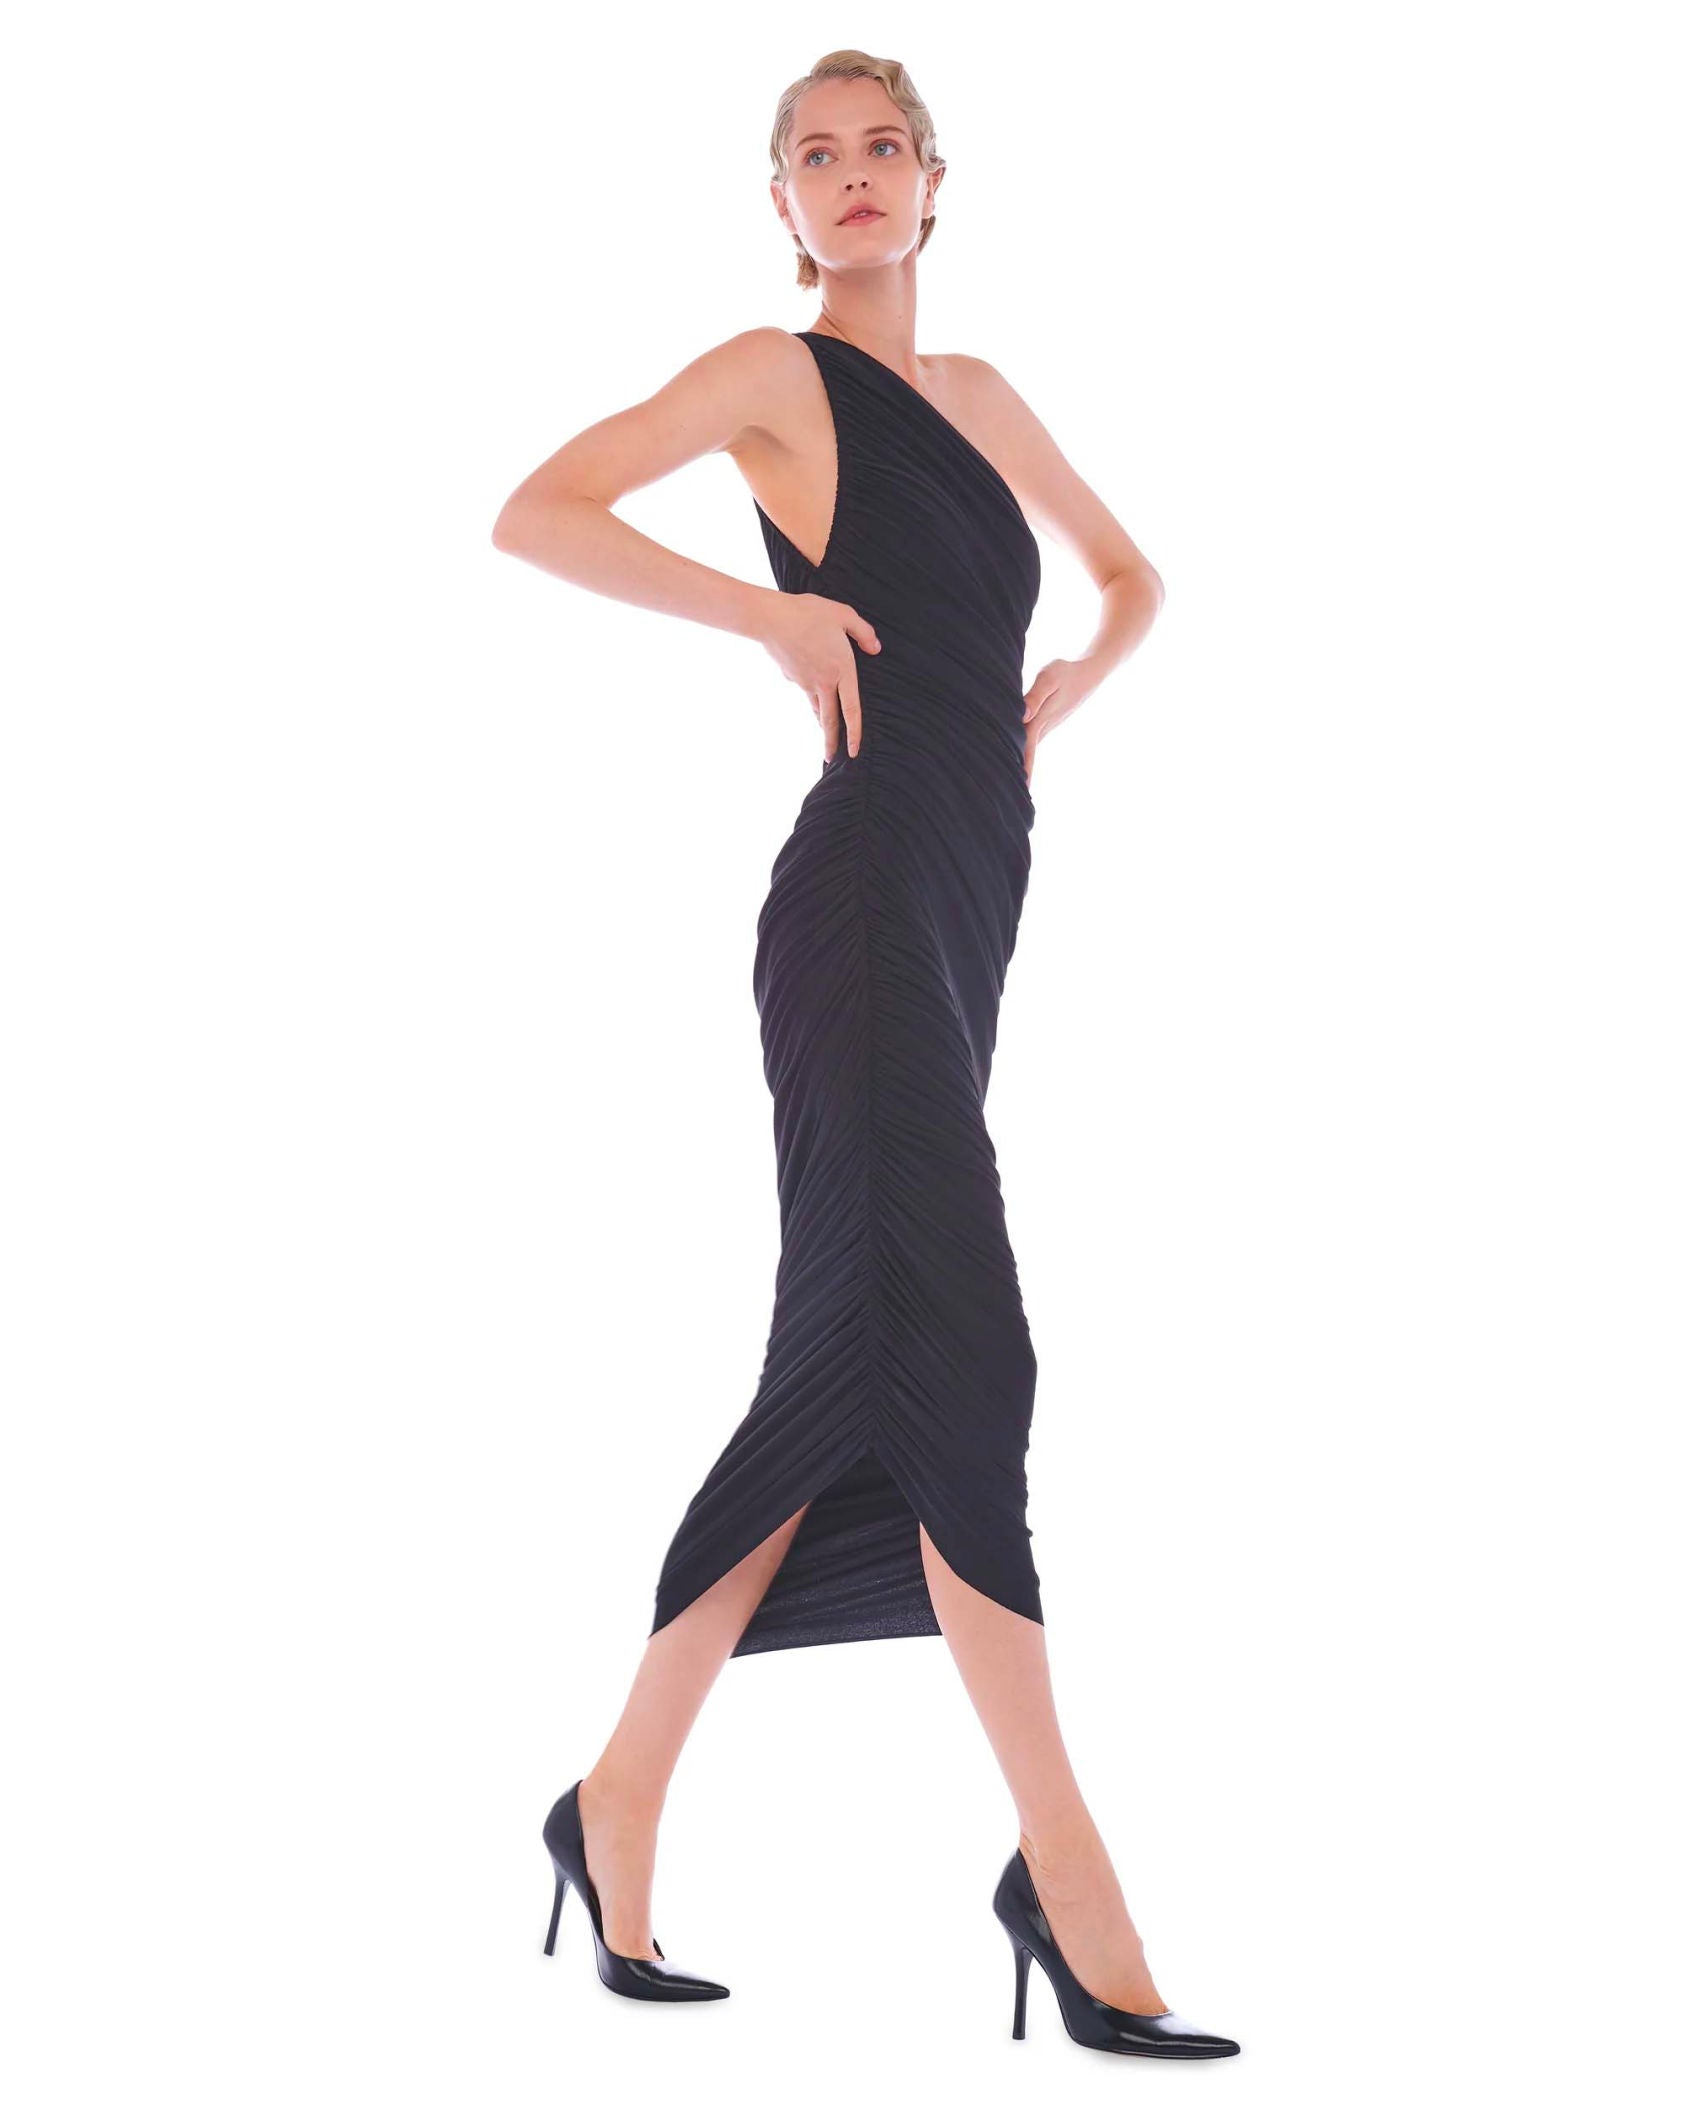 Classic Diana Midi Black Dress